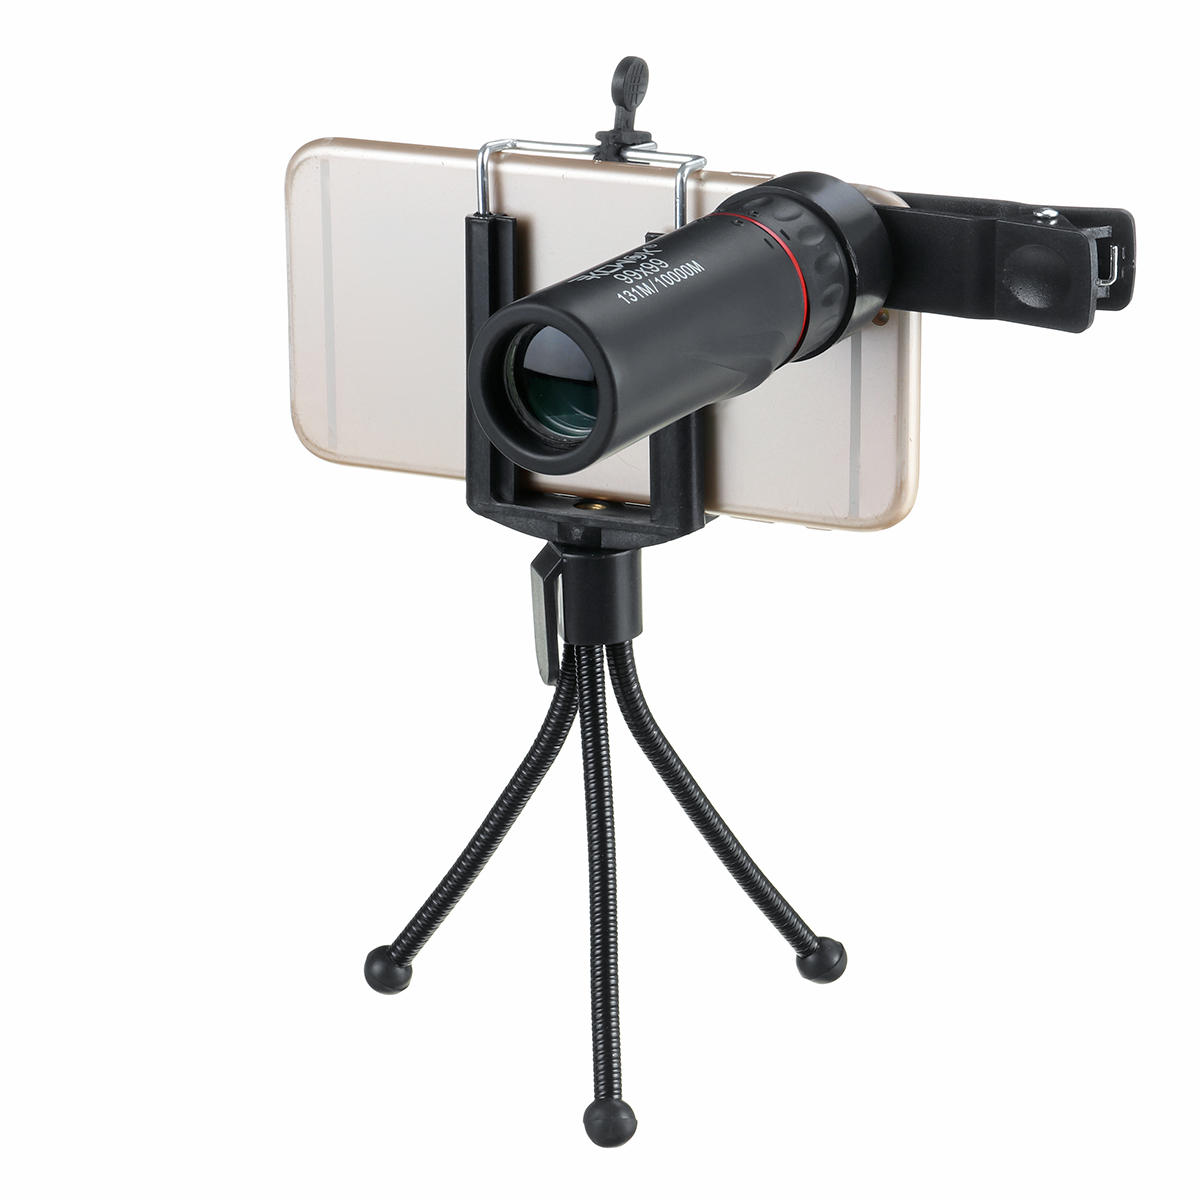 Портативный монокуляр HD BAK4 оптического дня и ночного видения 99x99 для кемпинга, походов и охоты.